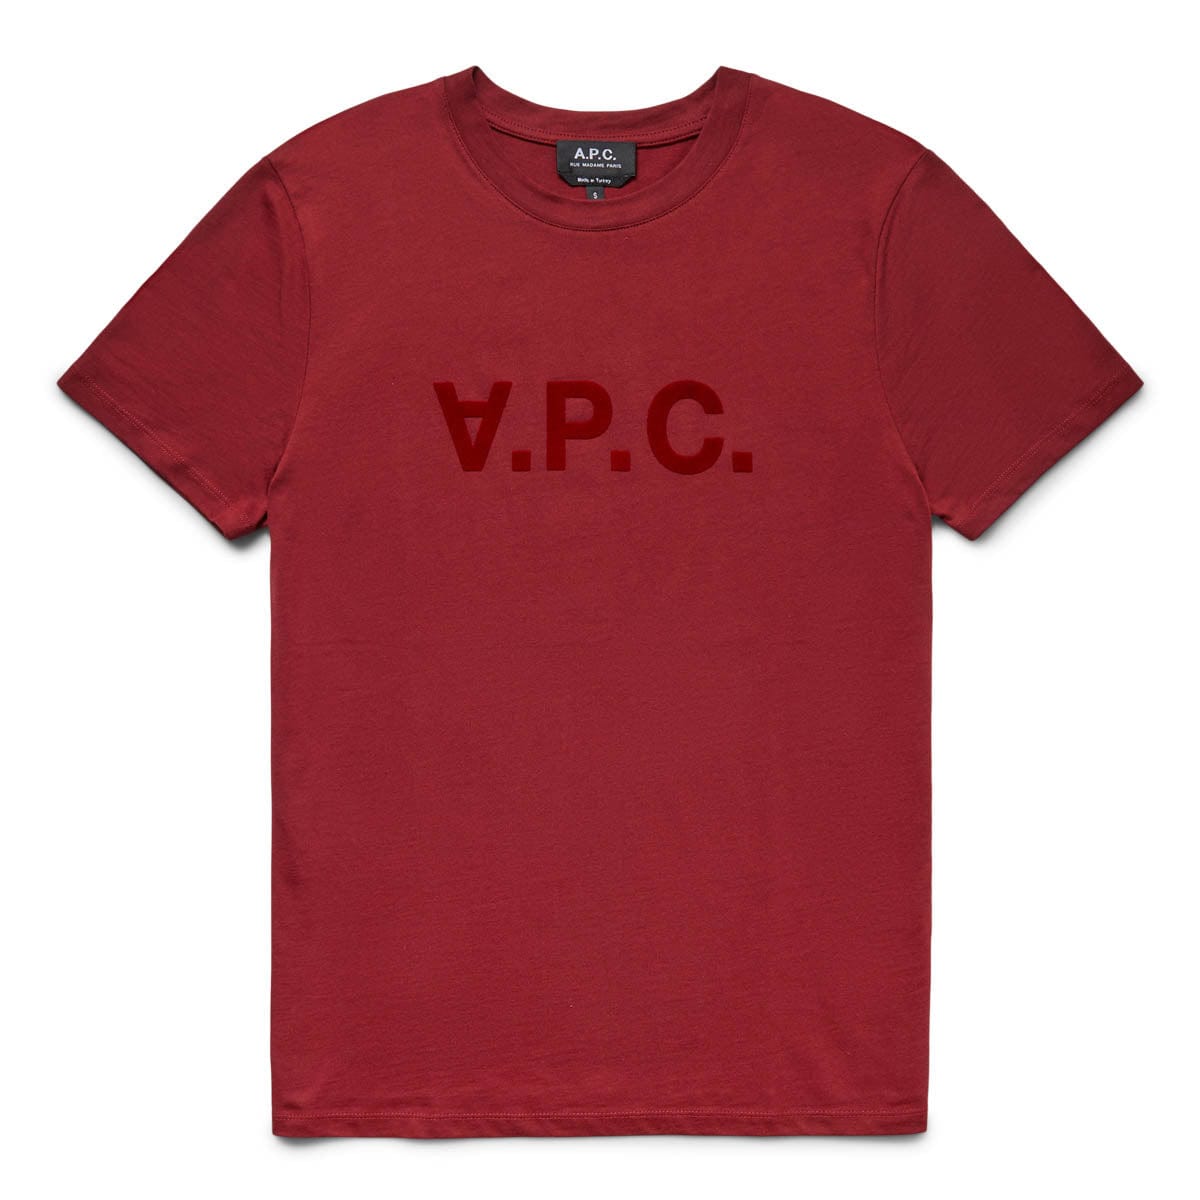 A.P.C. T-Shirts VPC COLOR H T-SHIRT